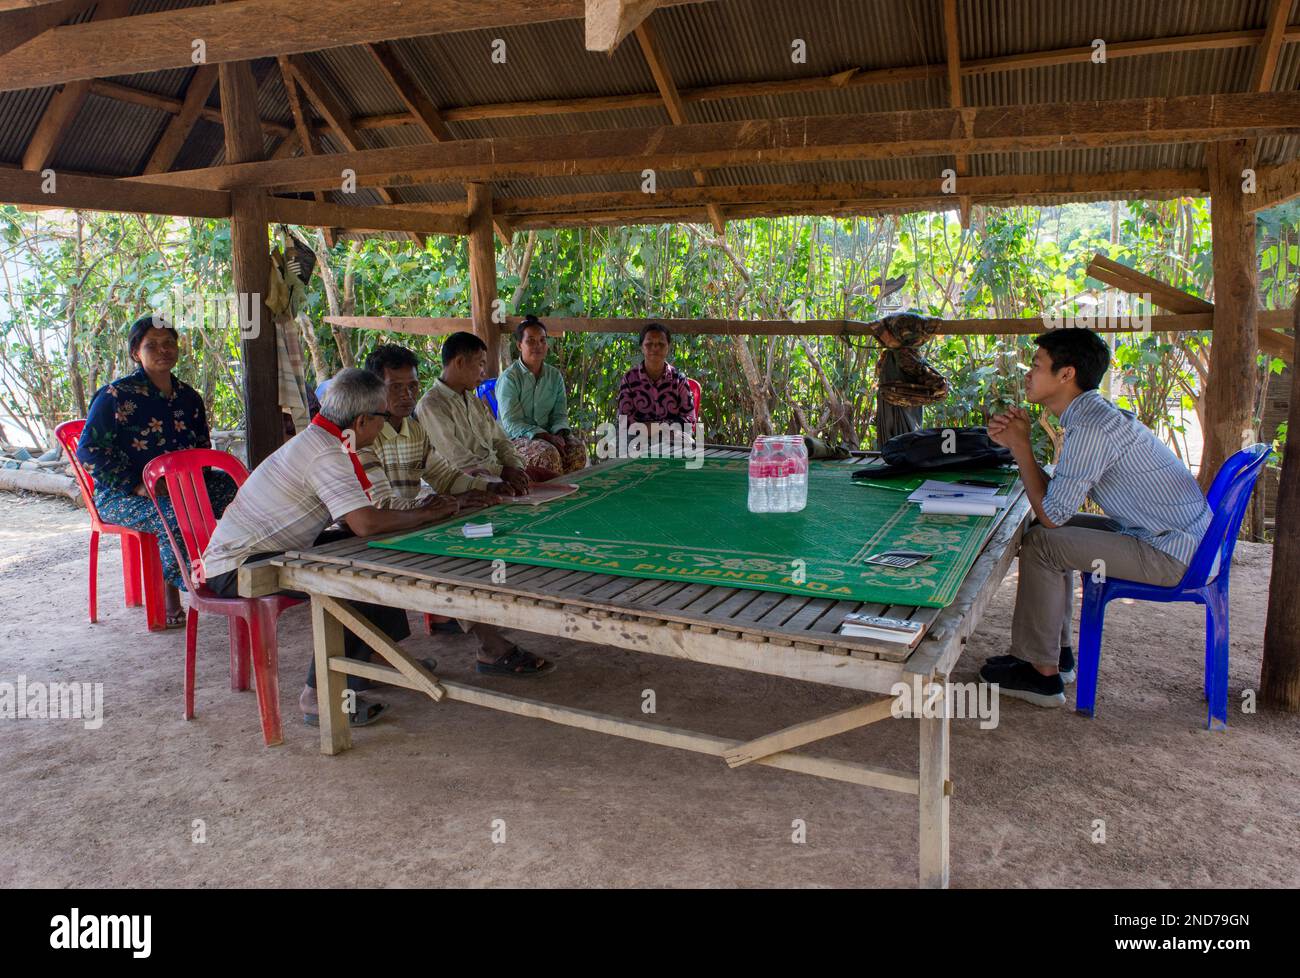 Diverses images des réunions communautaires DU TCHAD (Santé communautaire et développement agricole) facilitées par Kakada. Le projet vise à améliorer l'acce Banque D'Images